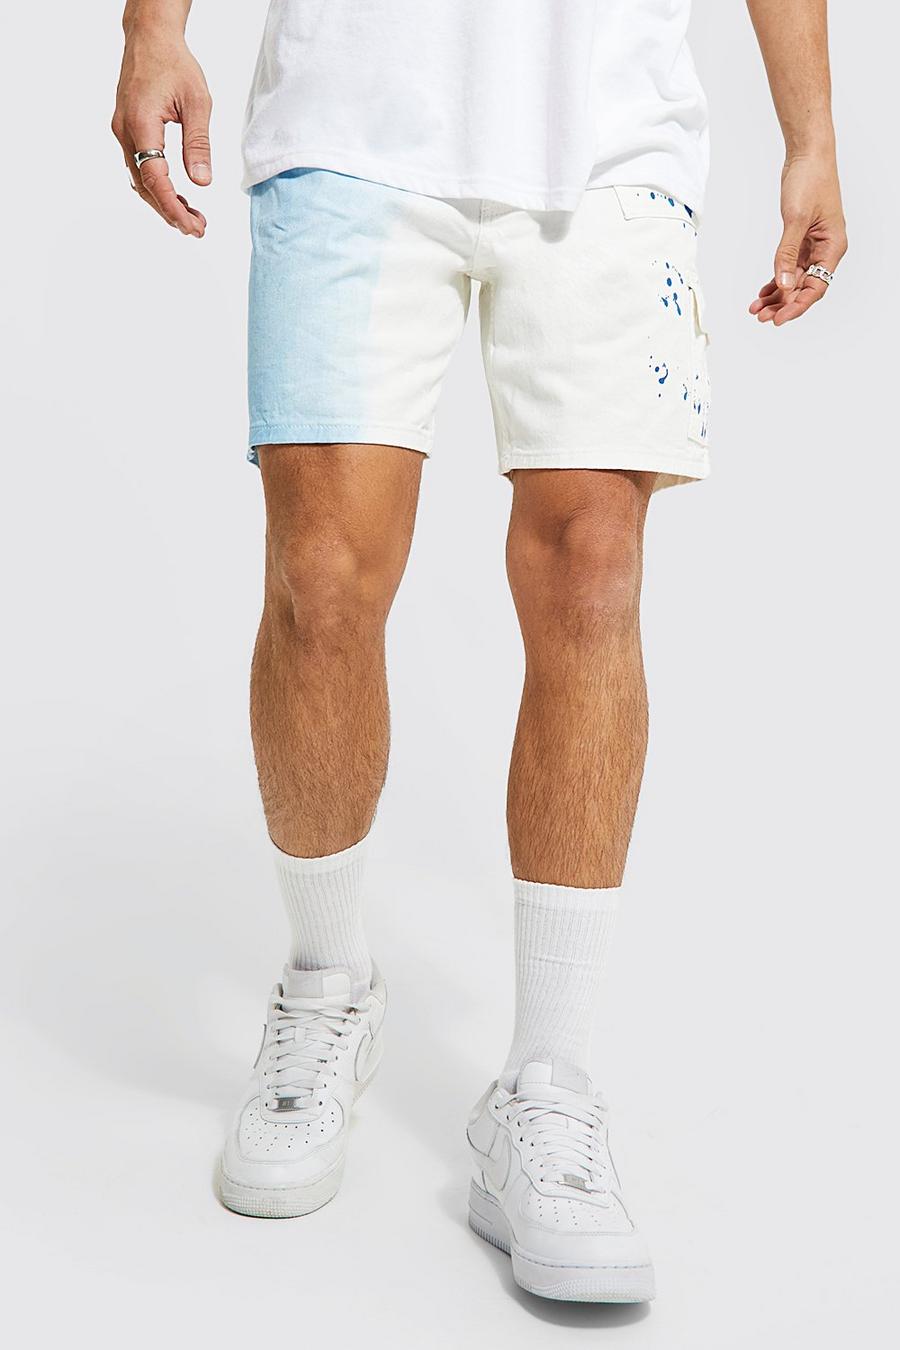 Lockere, gespleißte Shorts mit Farbspritzern, White image number 1